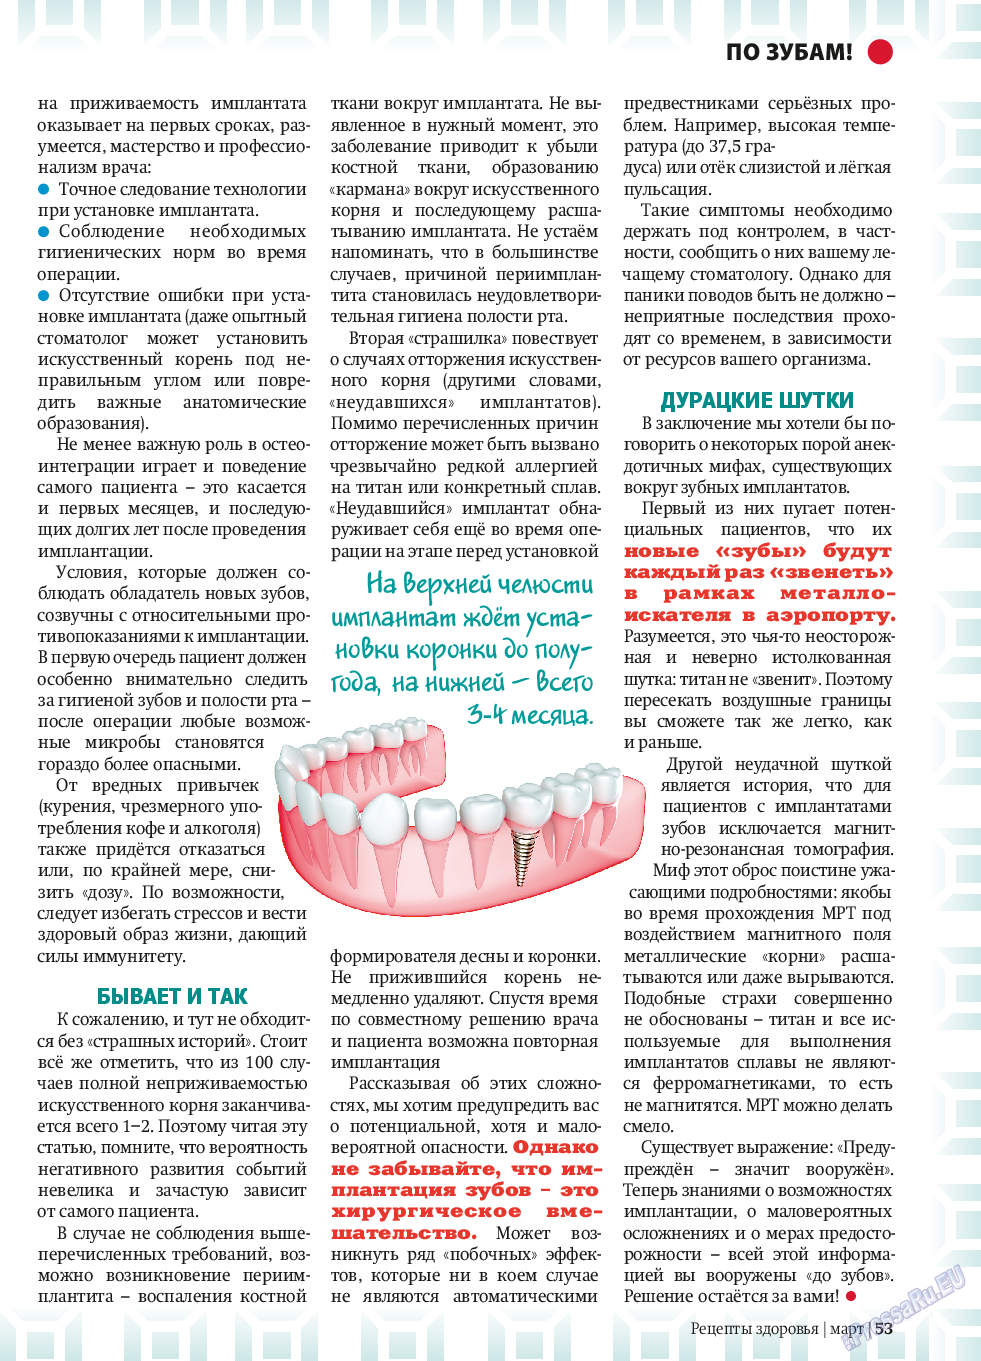 Рецепты здоровья (журнал). 2014 год, номер 58, стр. 53